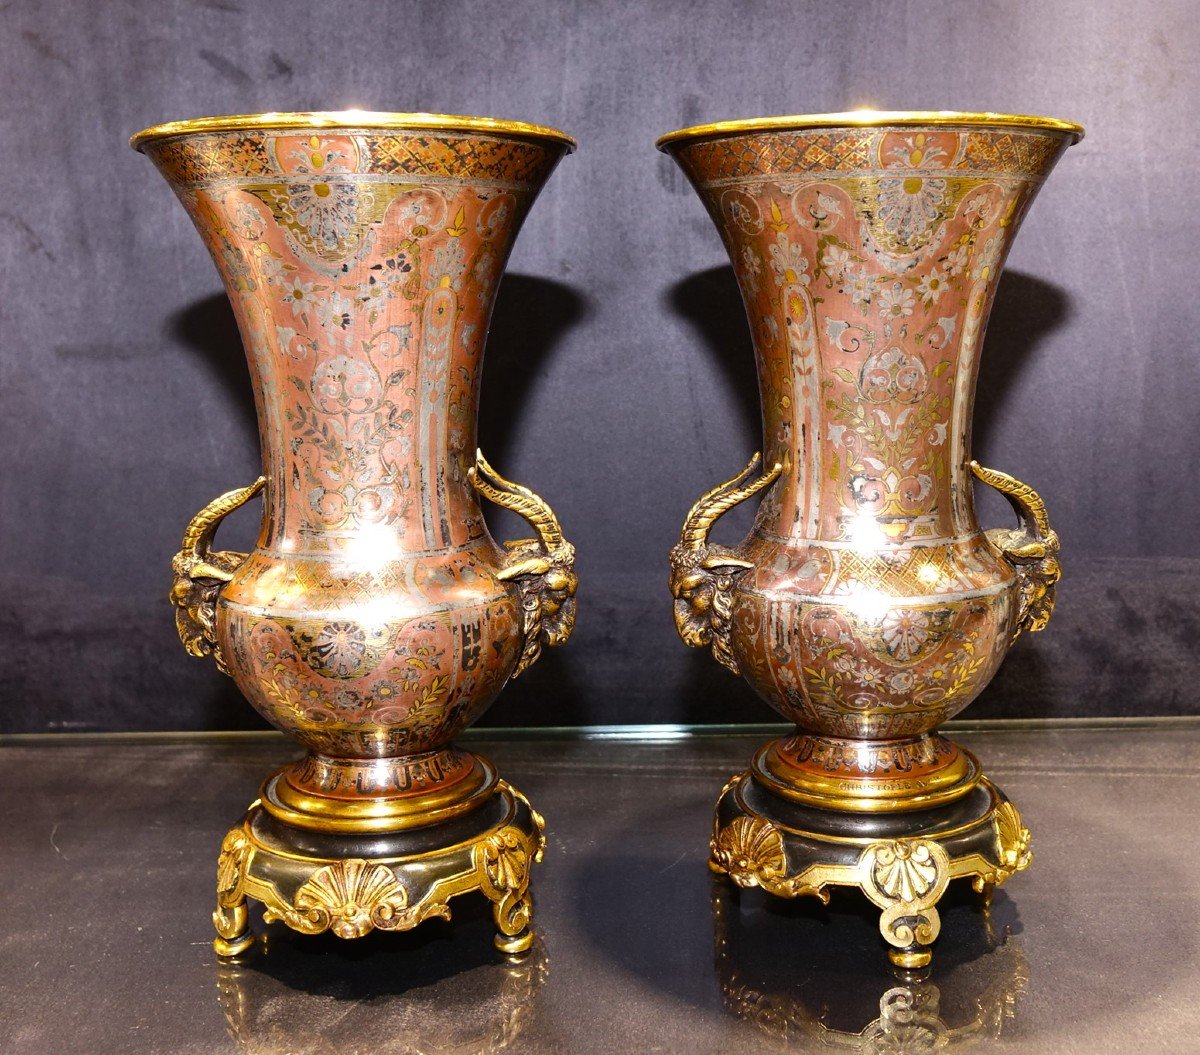 Christofle Emile Reiber Paire de Vases 1875